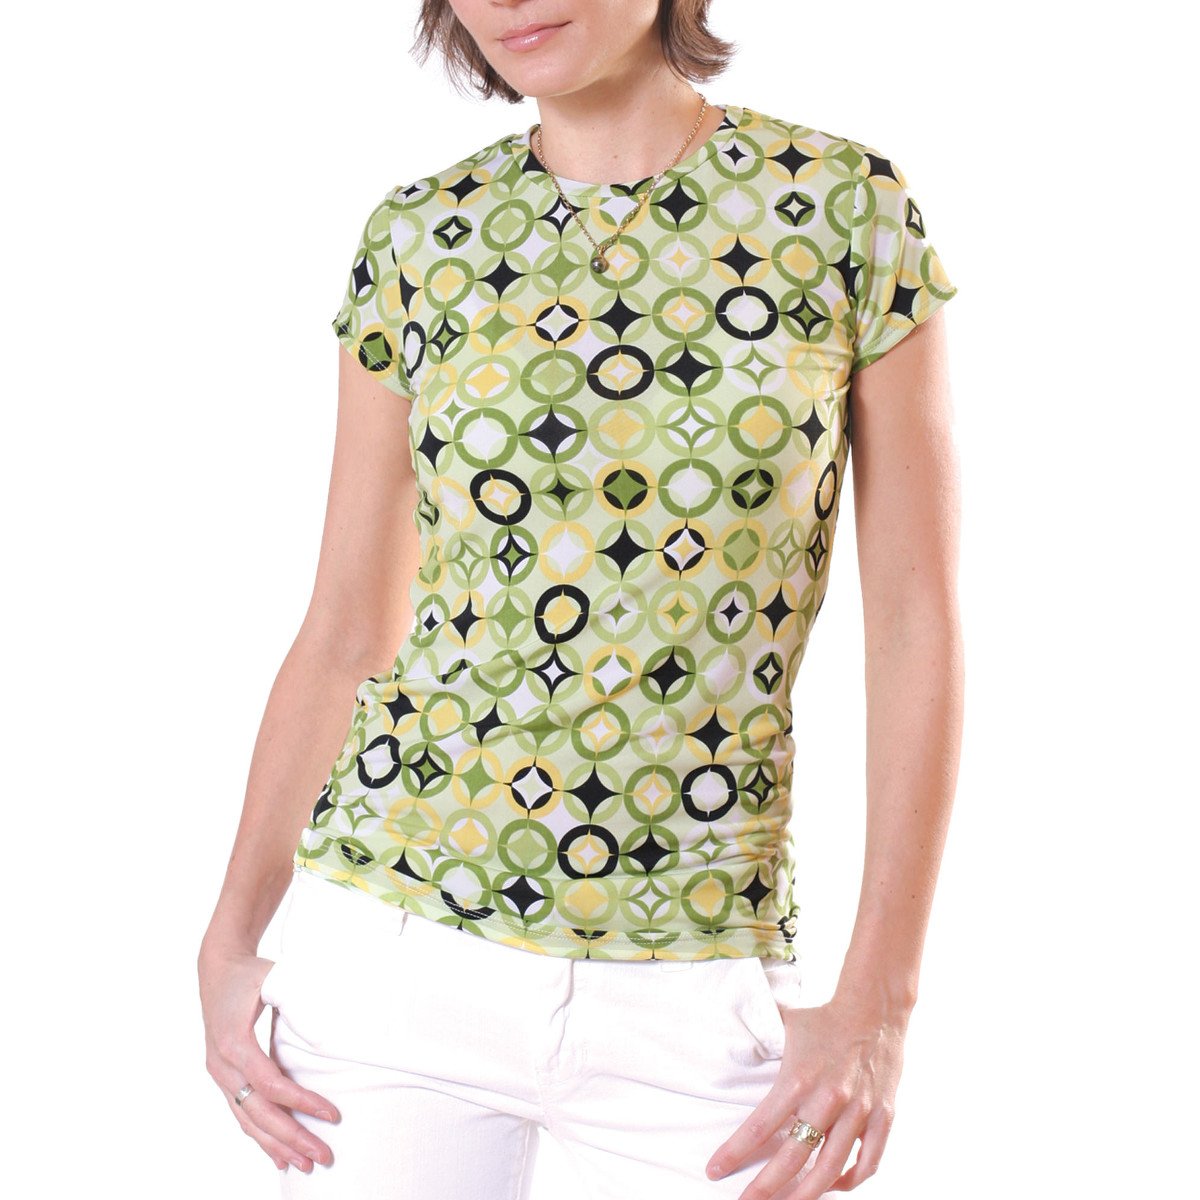 Women's T-Shirts Patterns image # 43065